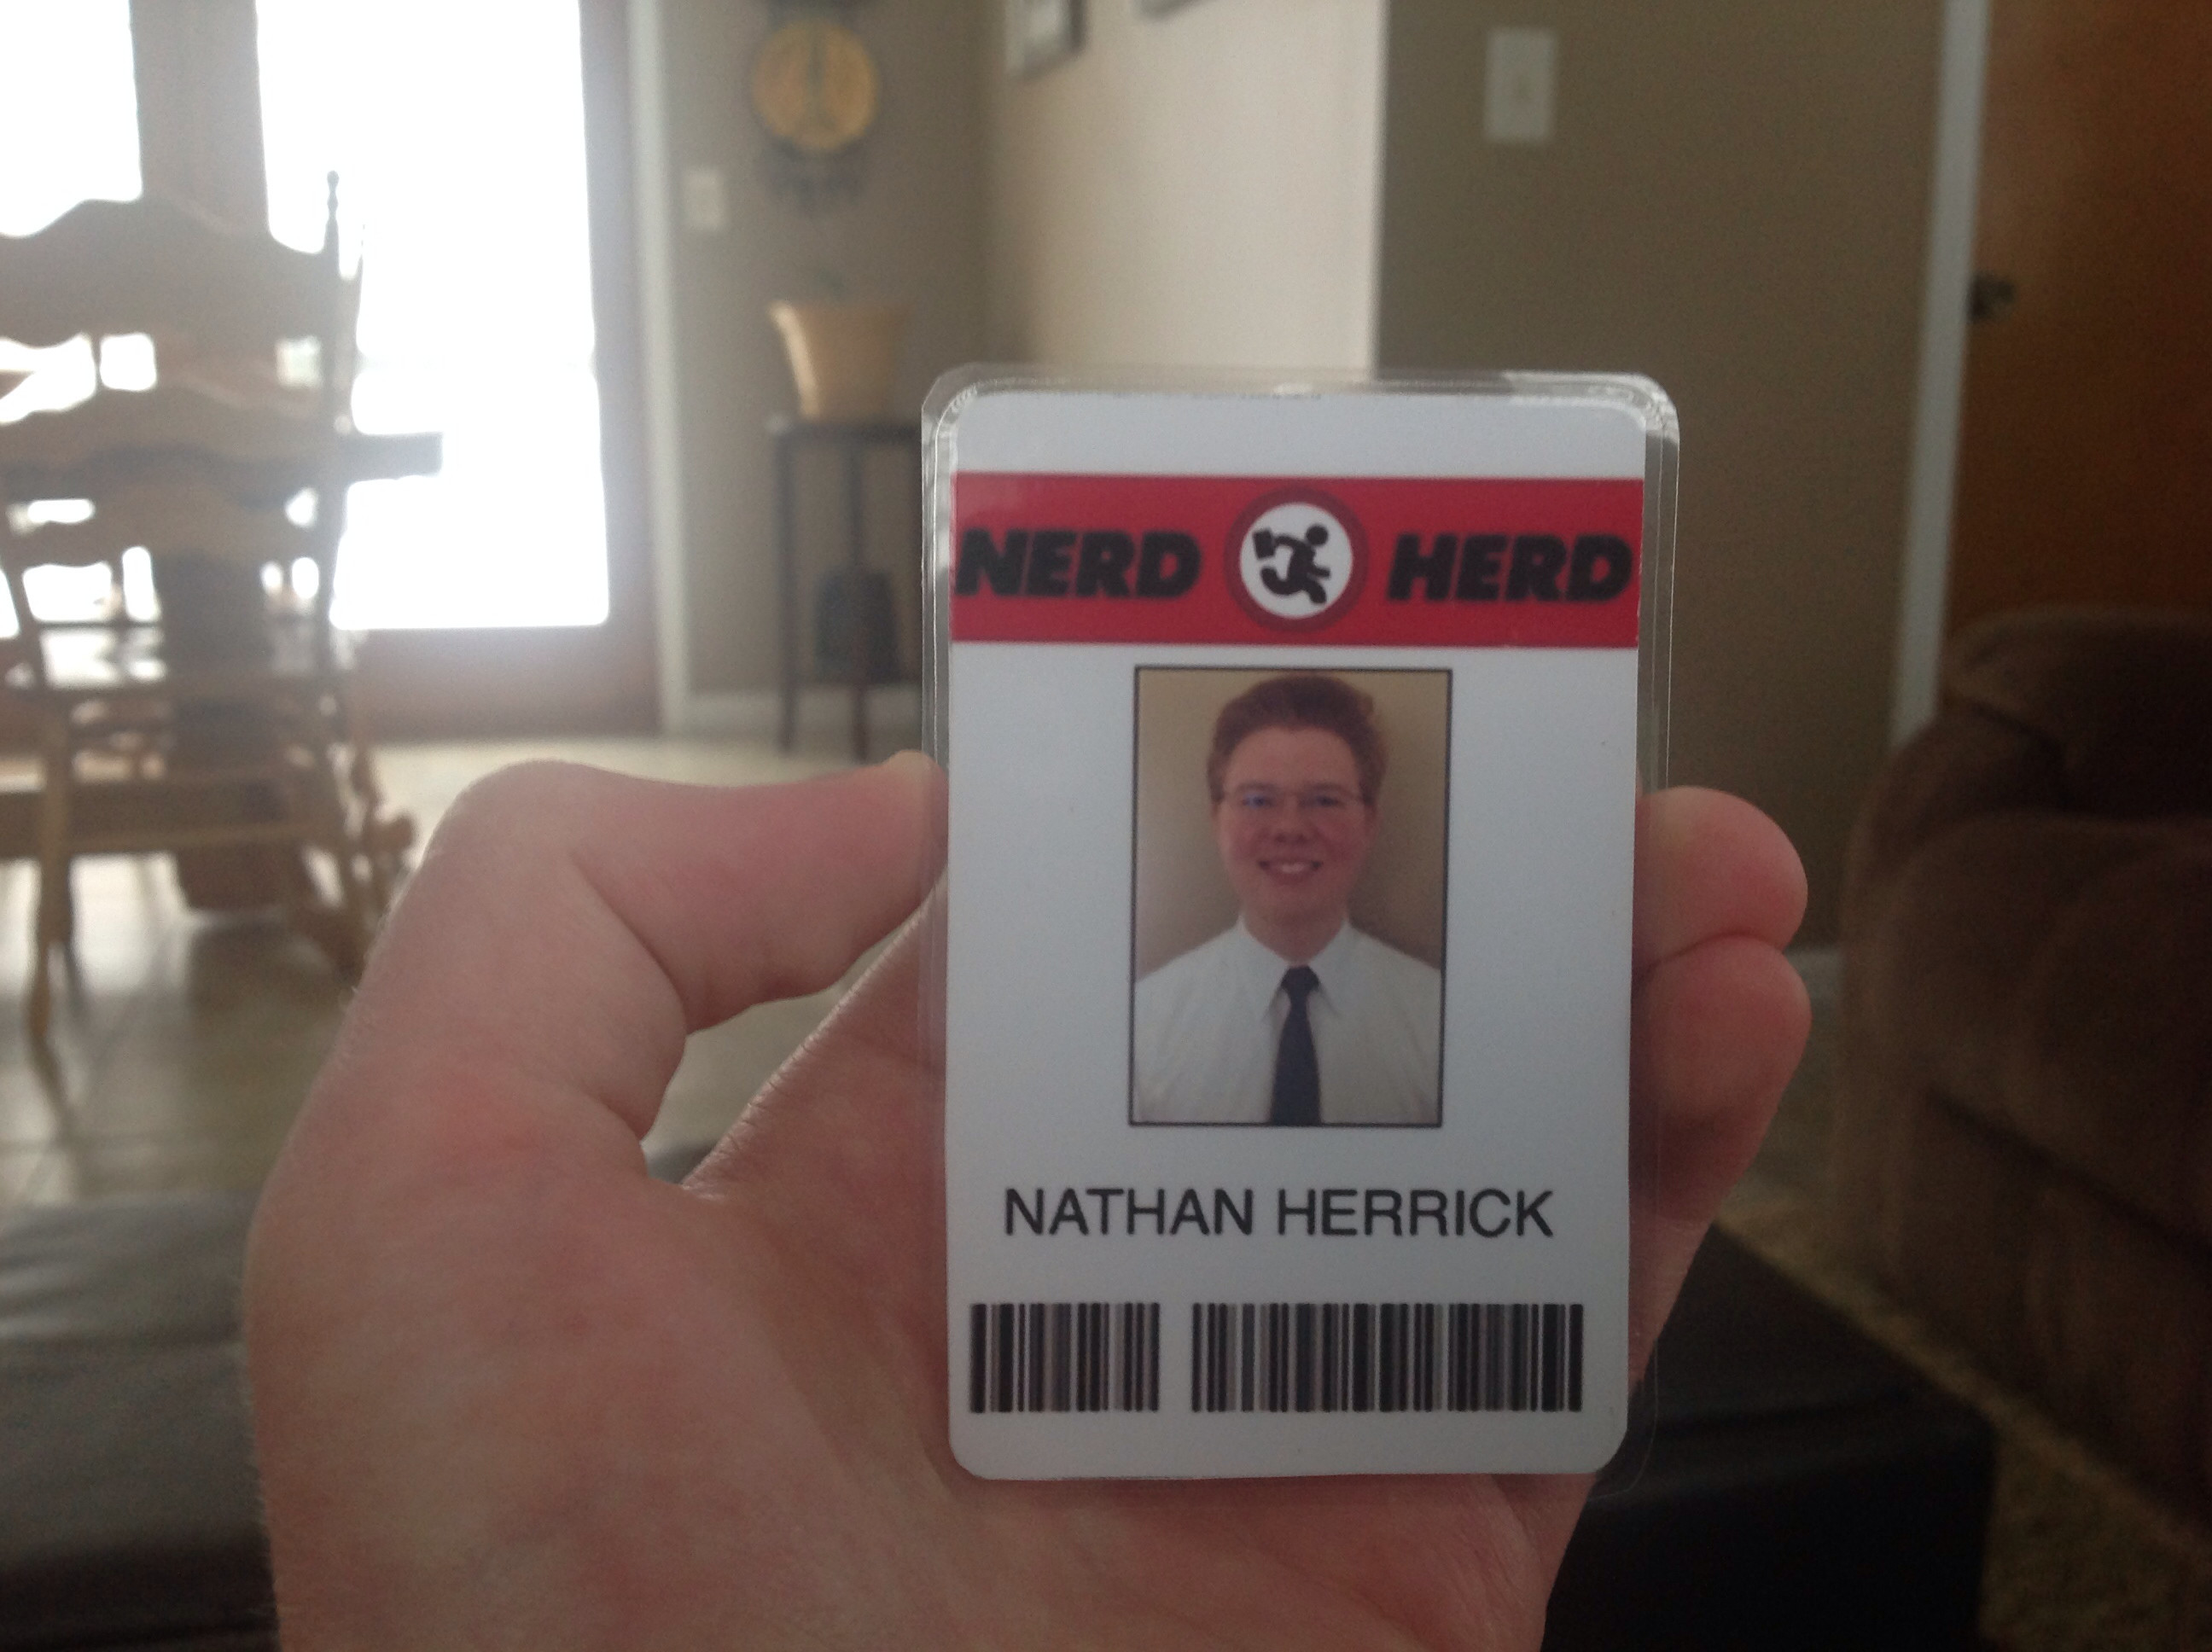 2592x1936 My very own Nerd Herd badge, it's official, I work in the nerd herd